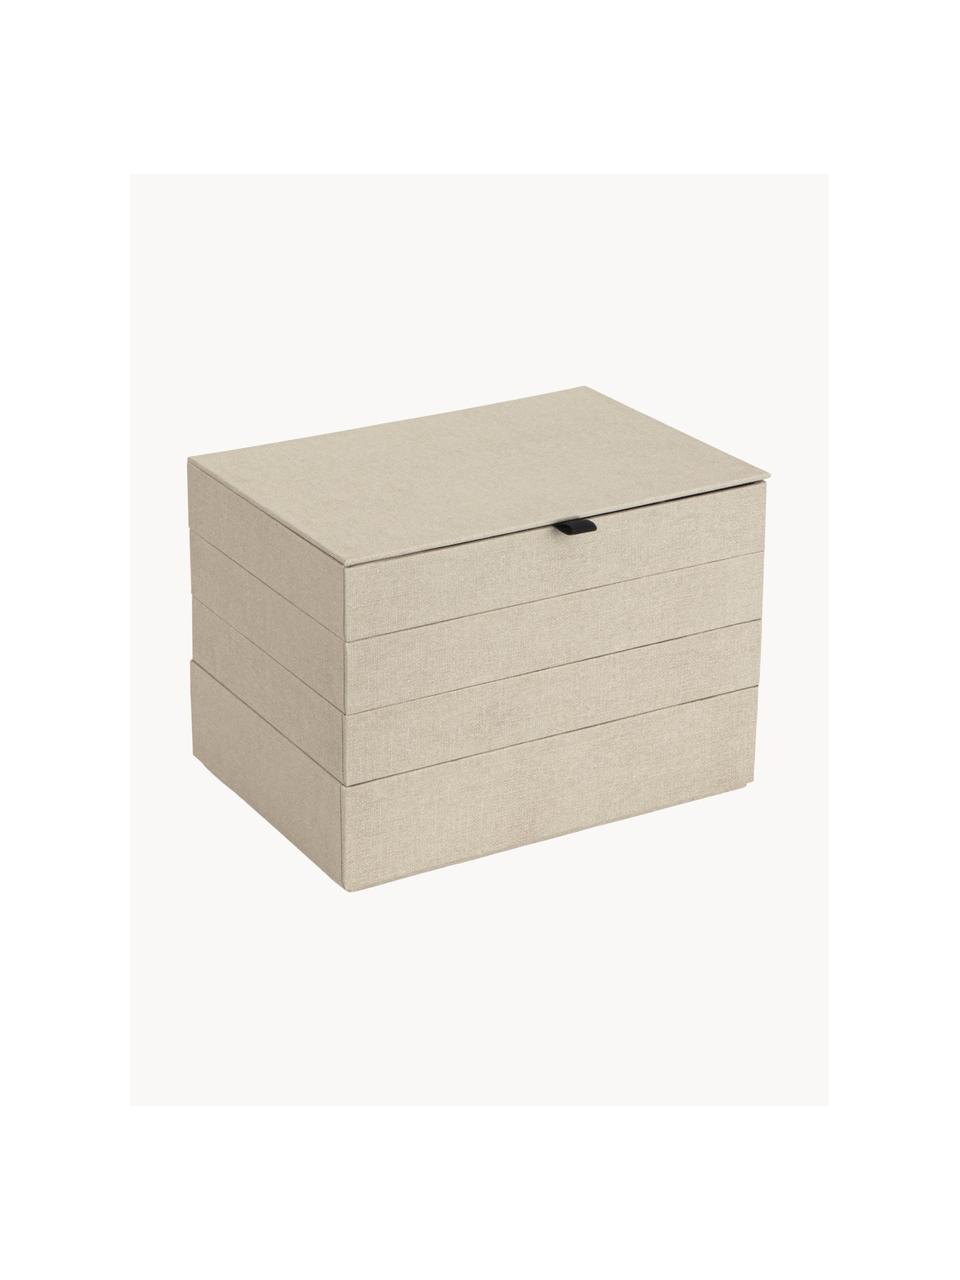 Schmuckbox Precious mit Magnet-Verschluss, Fester Karton, Hellbeige, B 27 x T 19 cm